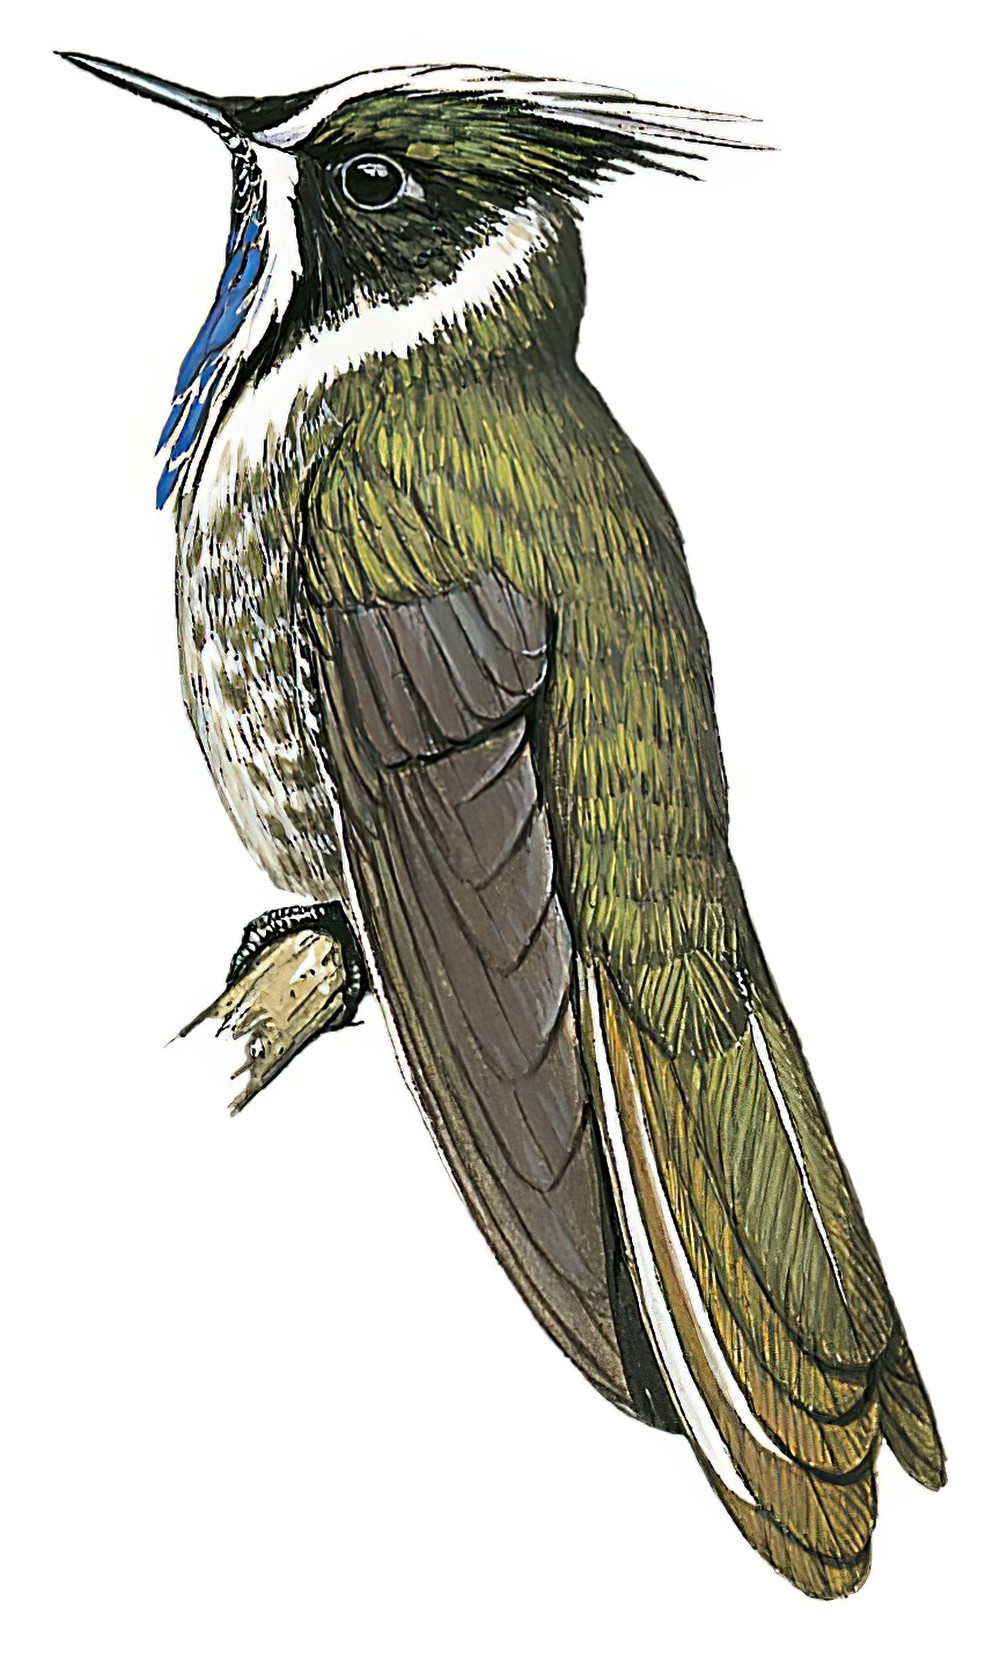 Blue-bearded Helmetcrest / Oxypogon cyanolaemus